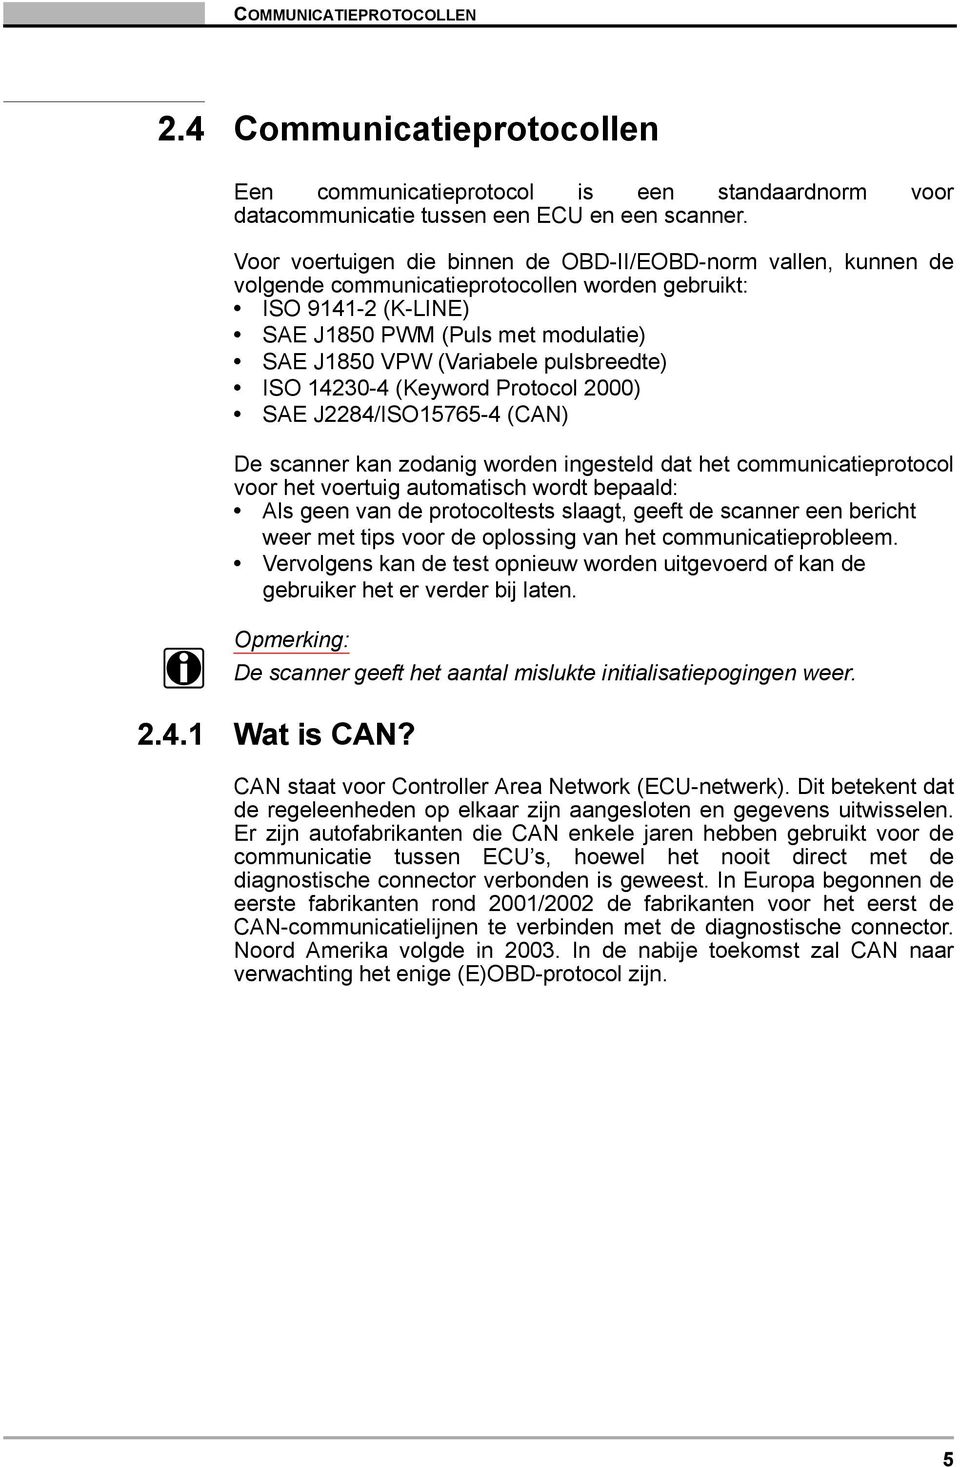 pulsbreedte) ISO 14230-4 (Keyword Protocol 2000) SAE J2284/ISO15765-4 (CAN) De scanner kan zodanig worden ingesteld dat het communicatieprotocol voor het voertuig automatisch wordt bepaald: Als geen